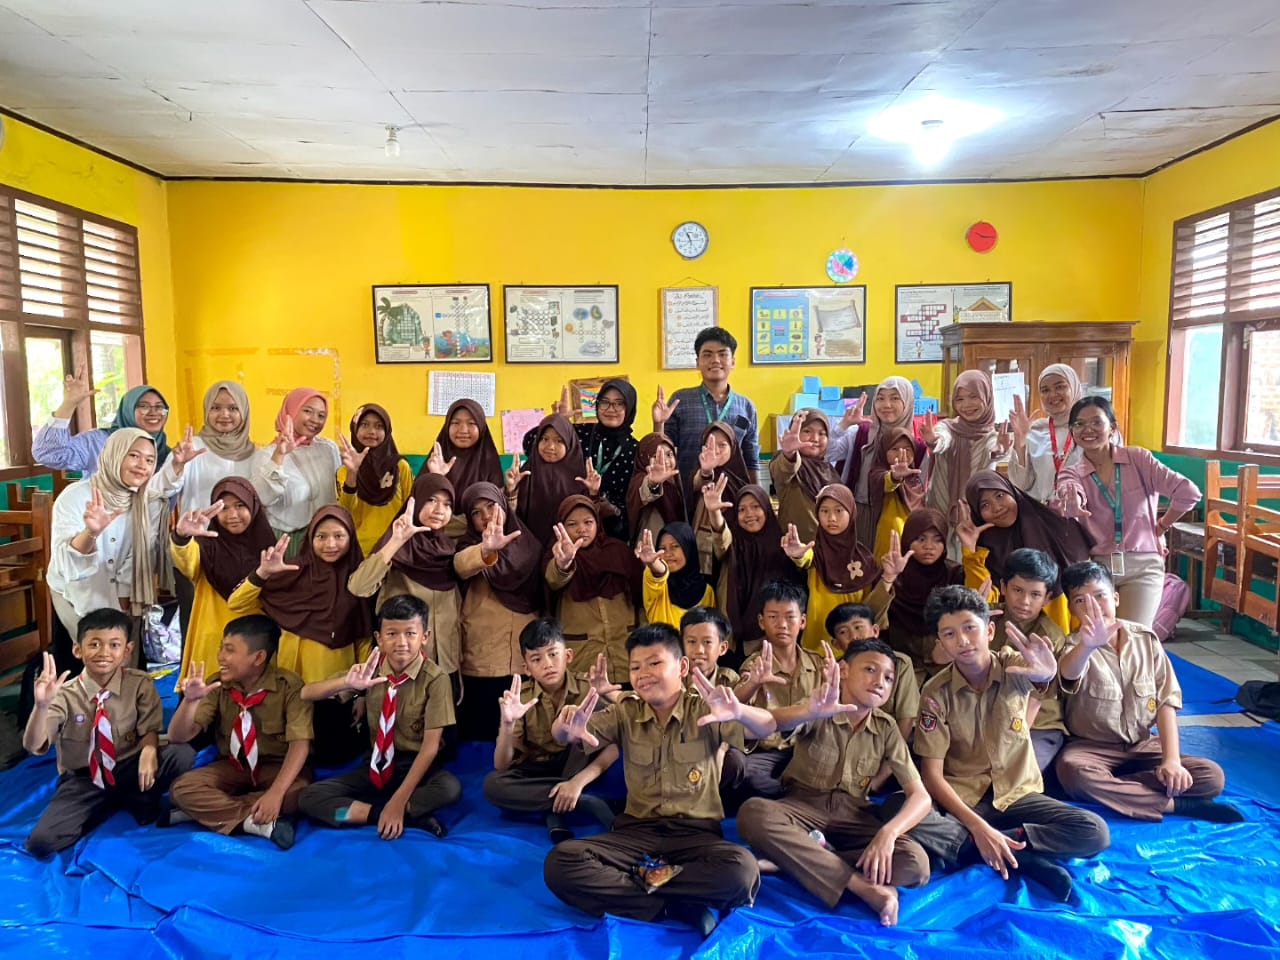 Kejar Mimpi Lampung By CIMB Niaga - Ruang Pangan Berbagi Edukasi Menjaga Lingkungan Melalui Program LINGKAR